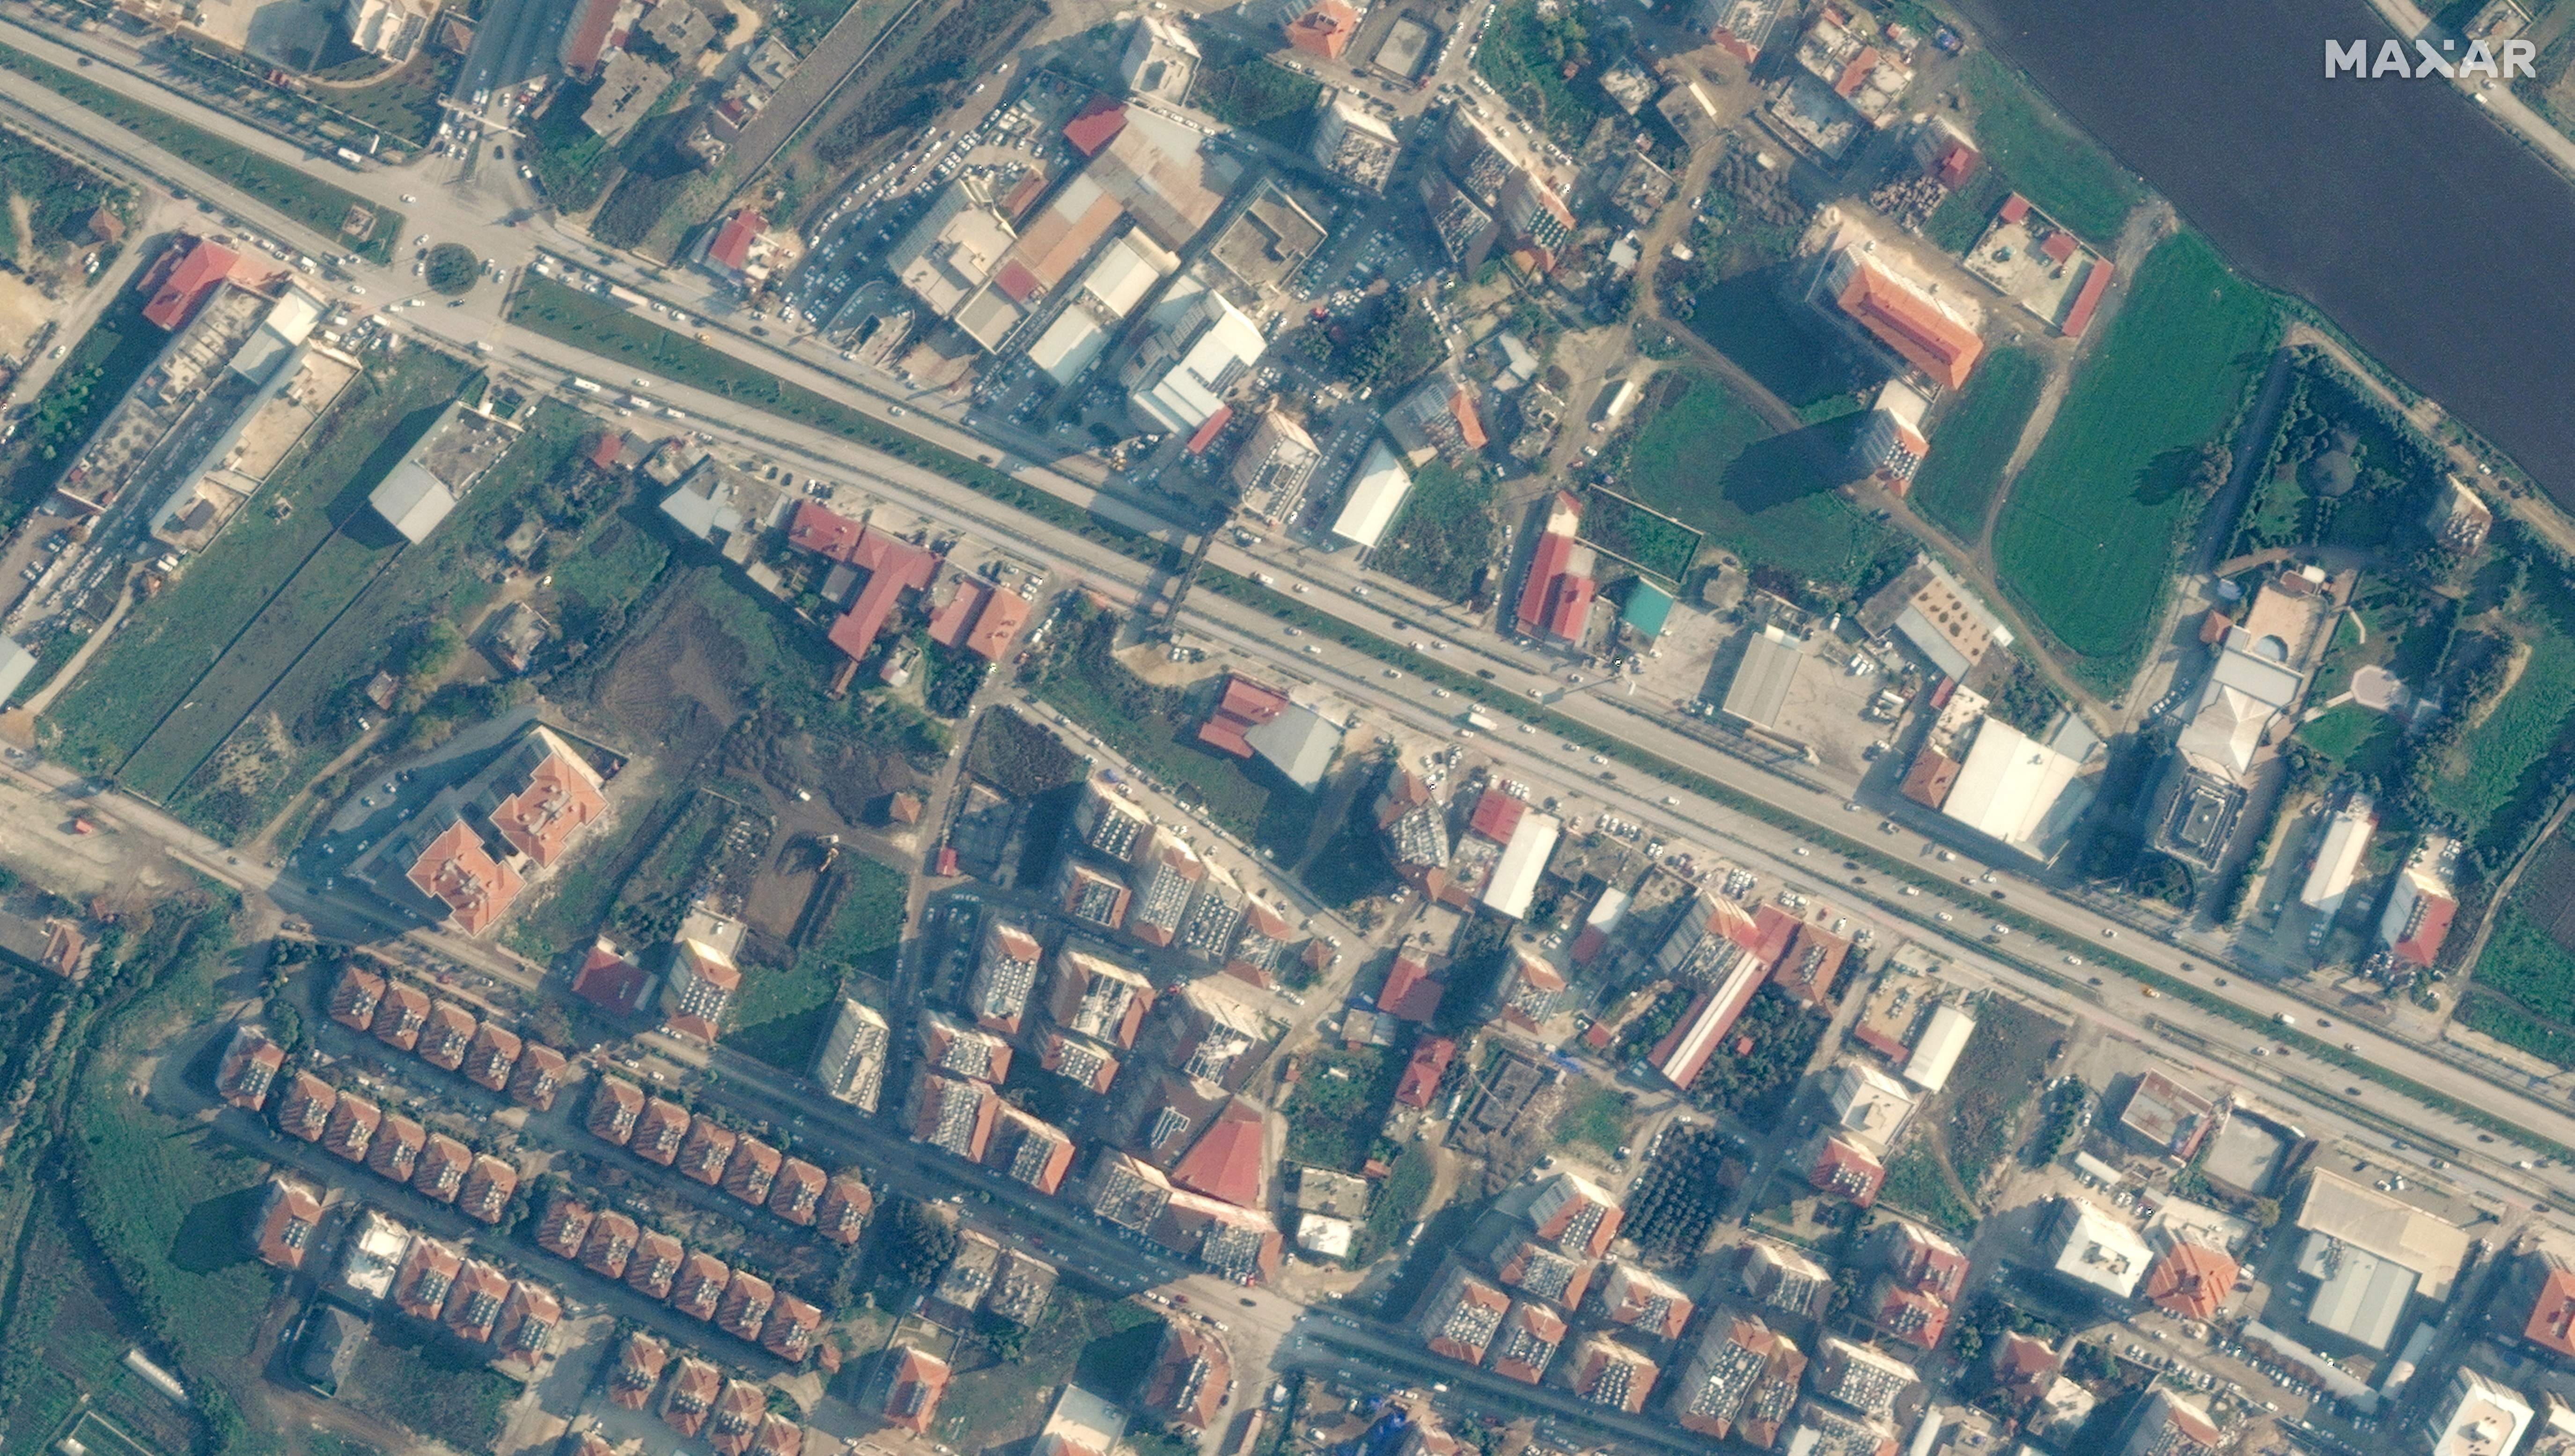 De esta manera lucía la ciudad de Antakya en Turquía antes del terremoto. Imagen satelital ©2023 Maxar Technologies/Handout via REUTERS 